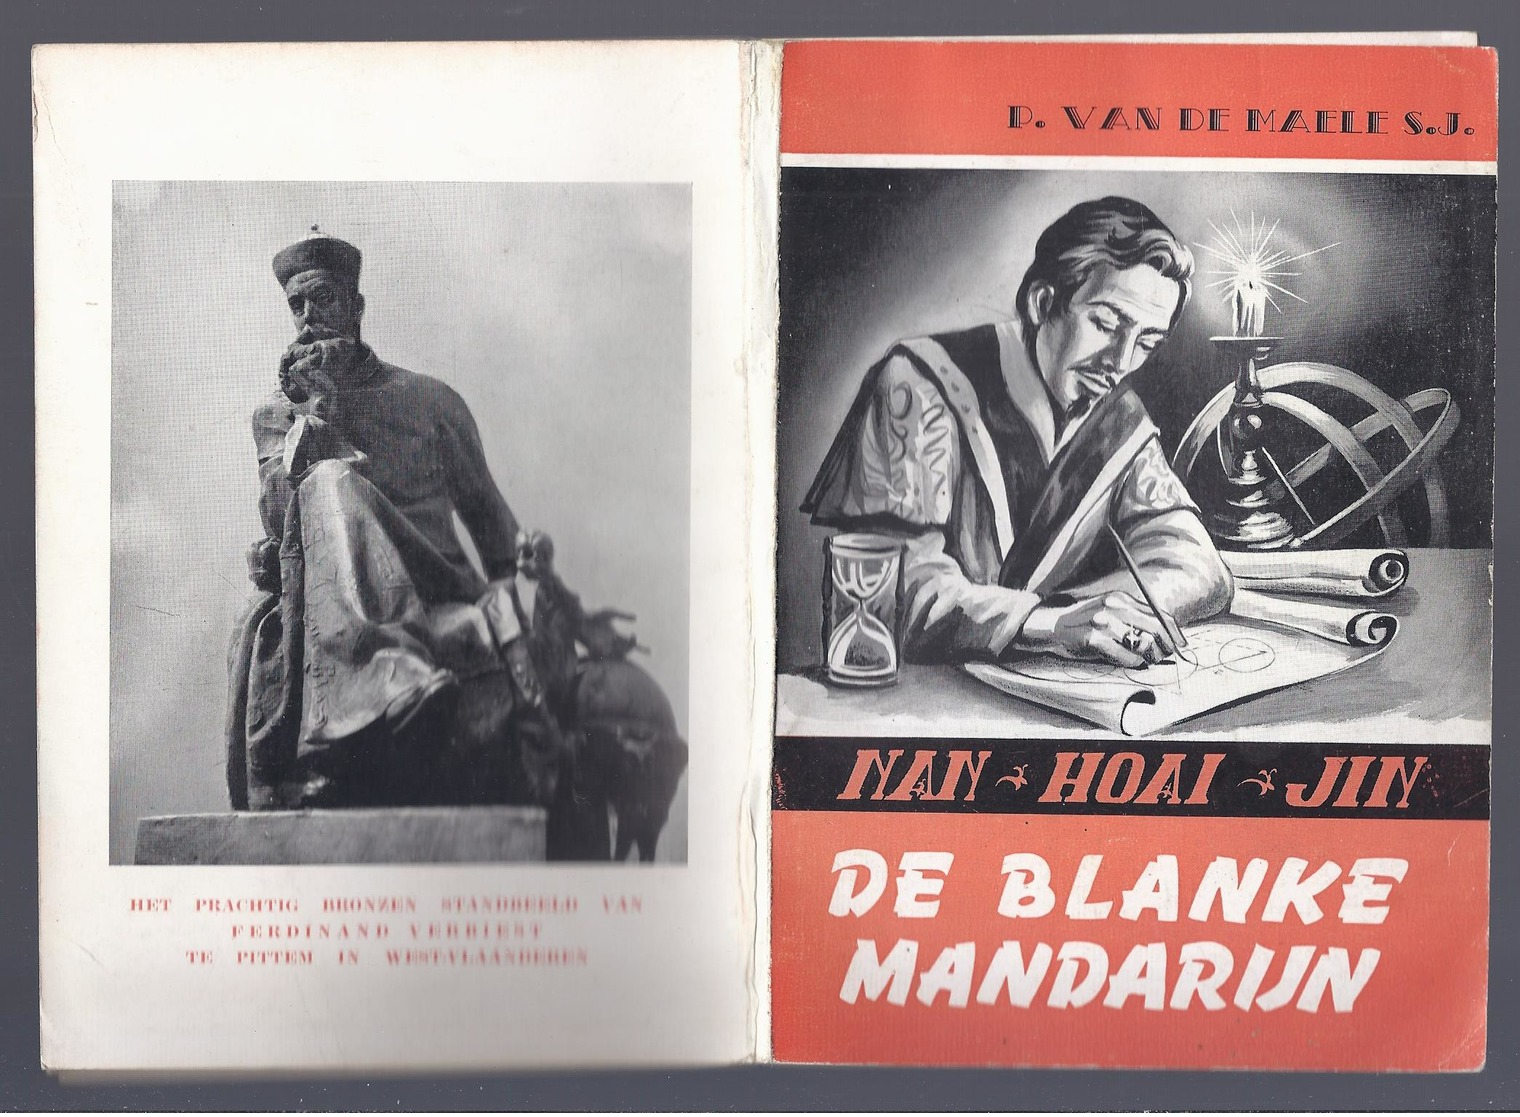 1955 DE BLANKE MANDARIJN DE JEZUIET FERDINAND VERBIEST NAN HOAI JIN P. VAN DE WAELE PITTEM - Histoire